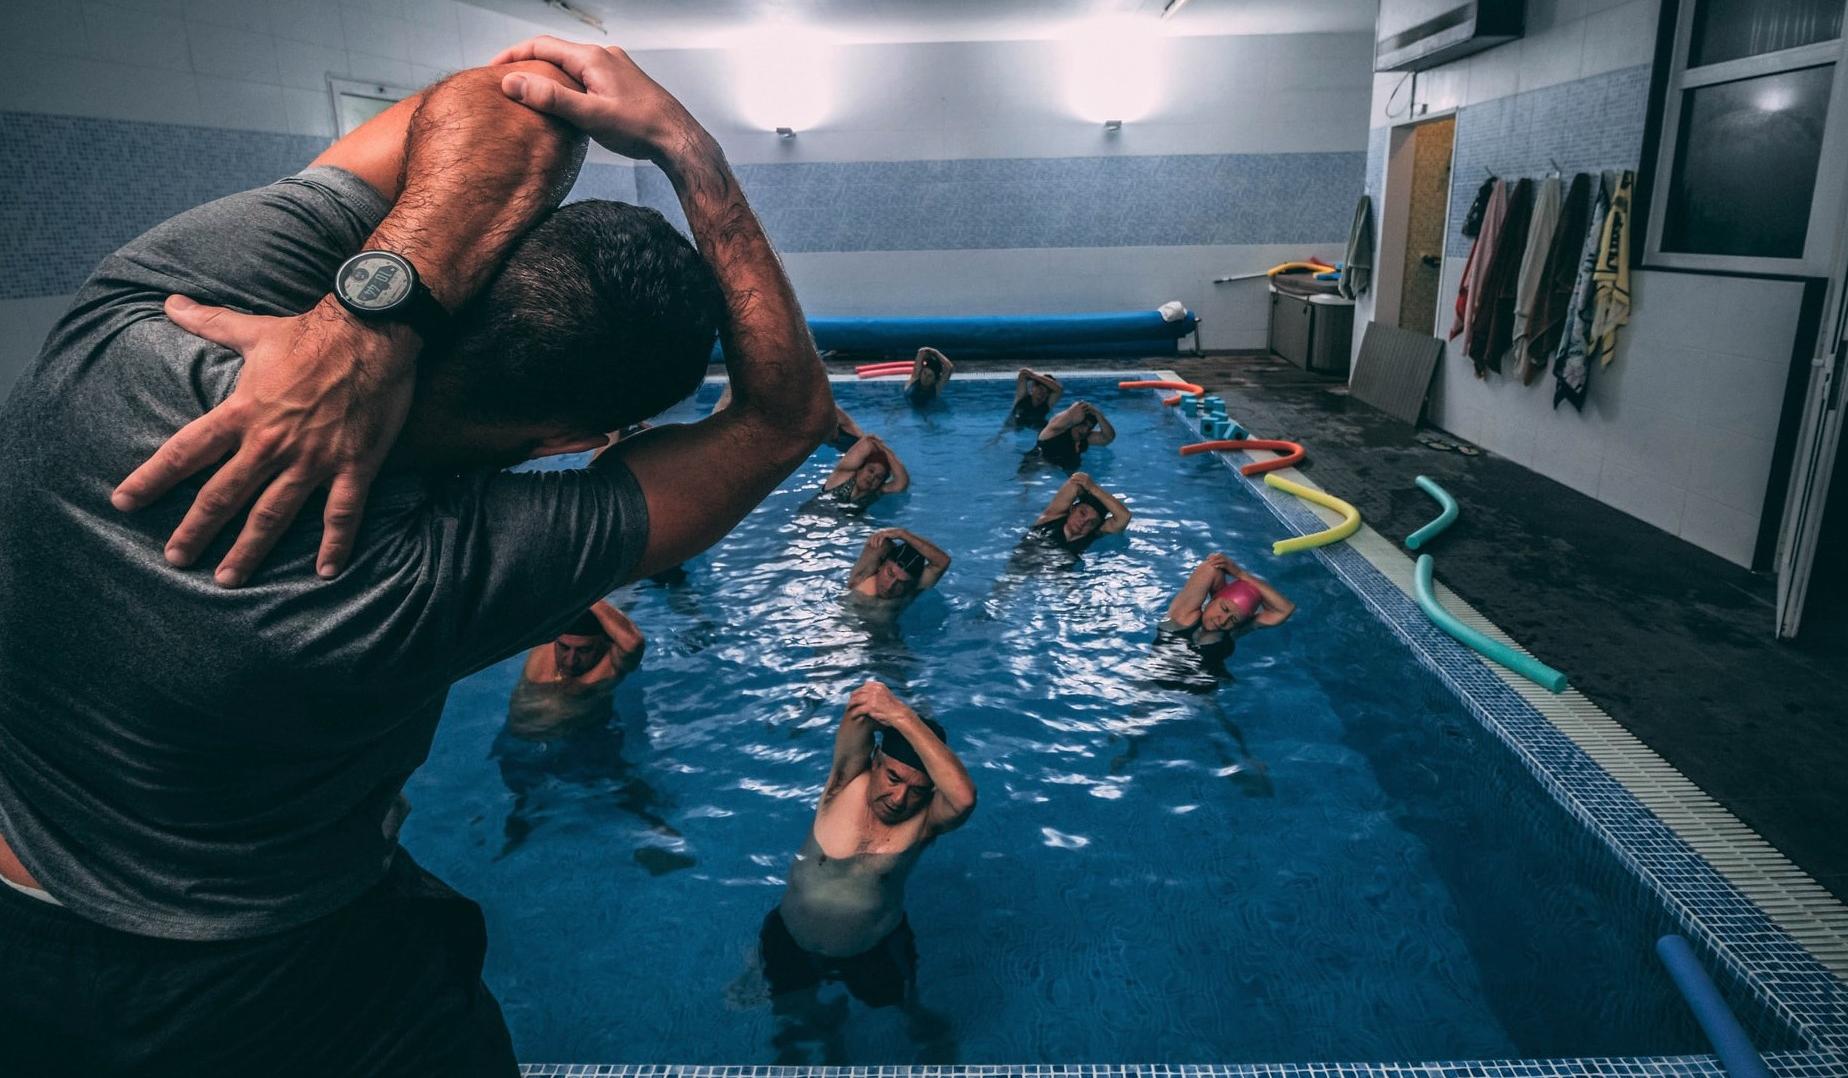 Trener izvaja skupinsko vadbo oseb, ki so v bazenu.